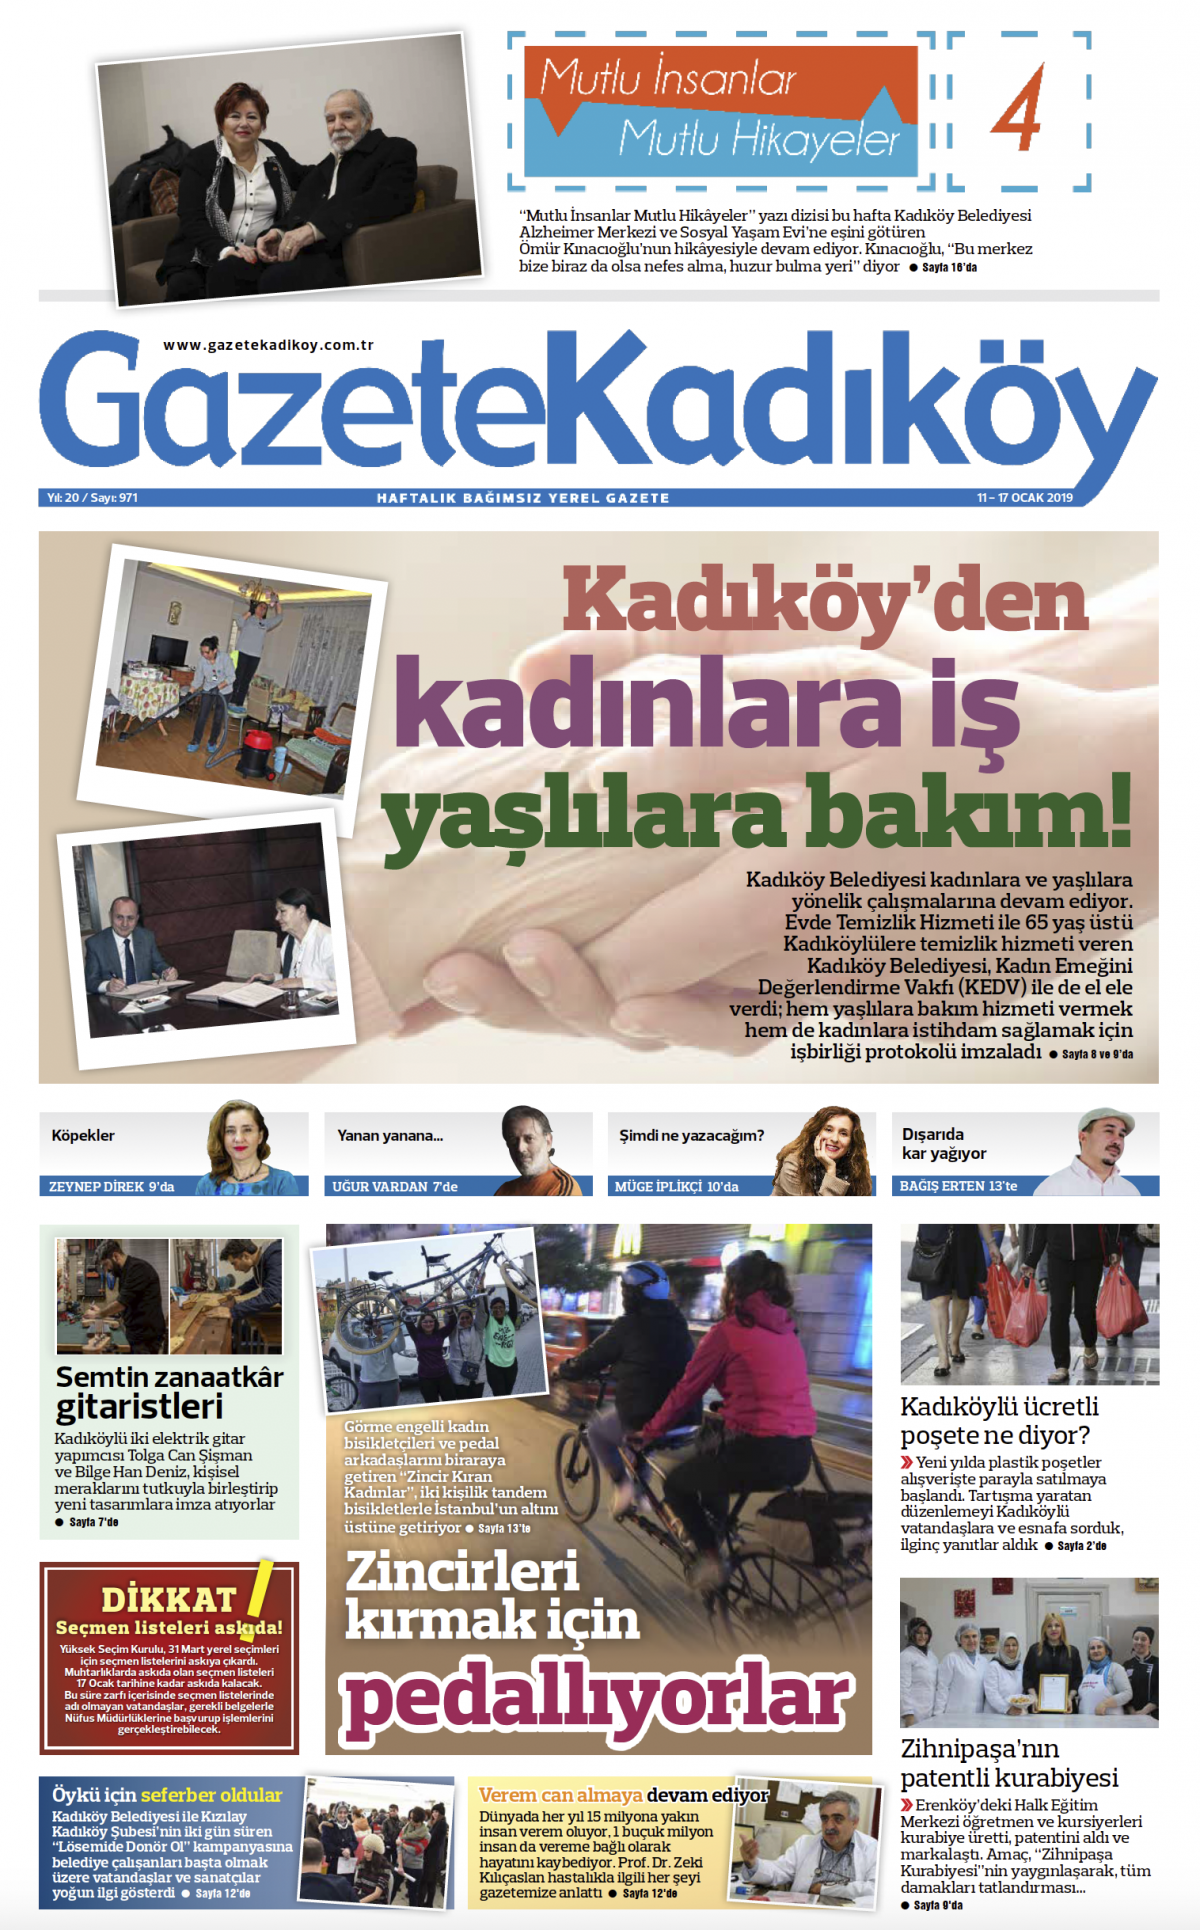 Gazete Kadıköy - 971. SAYI